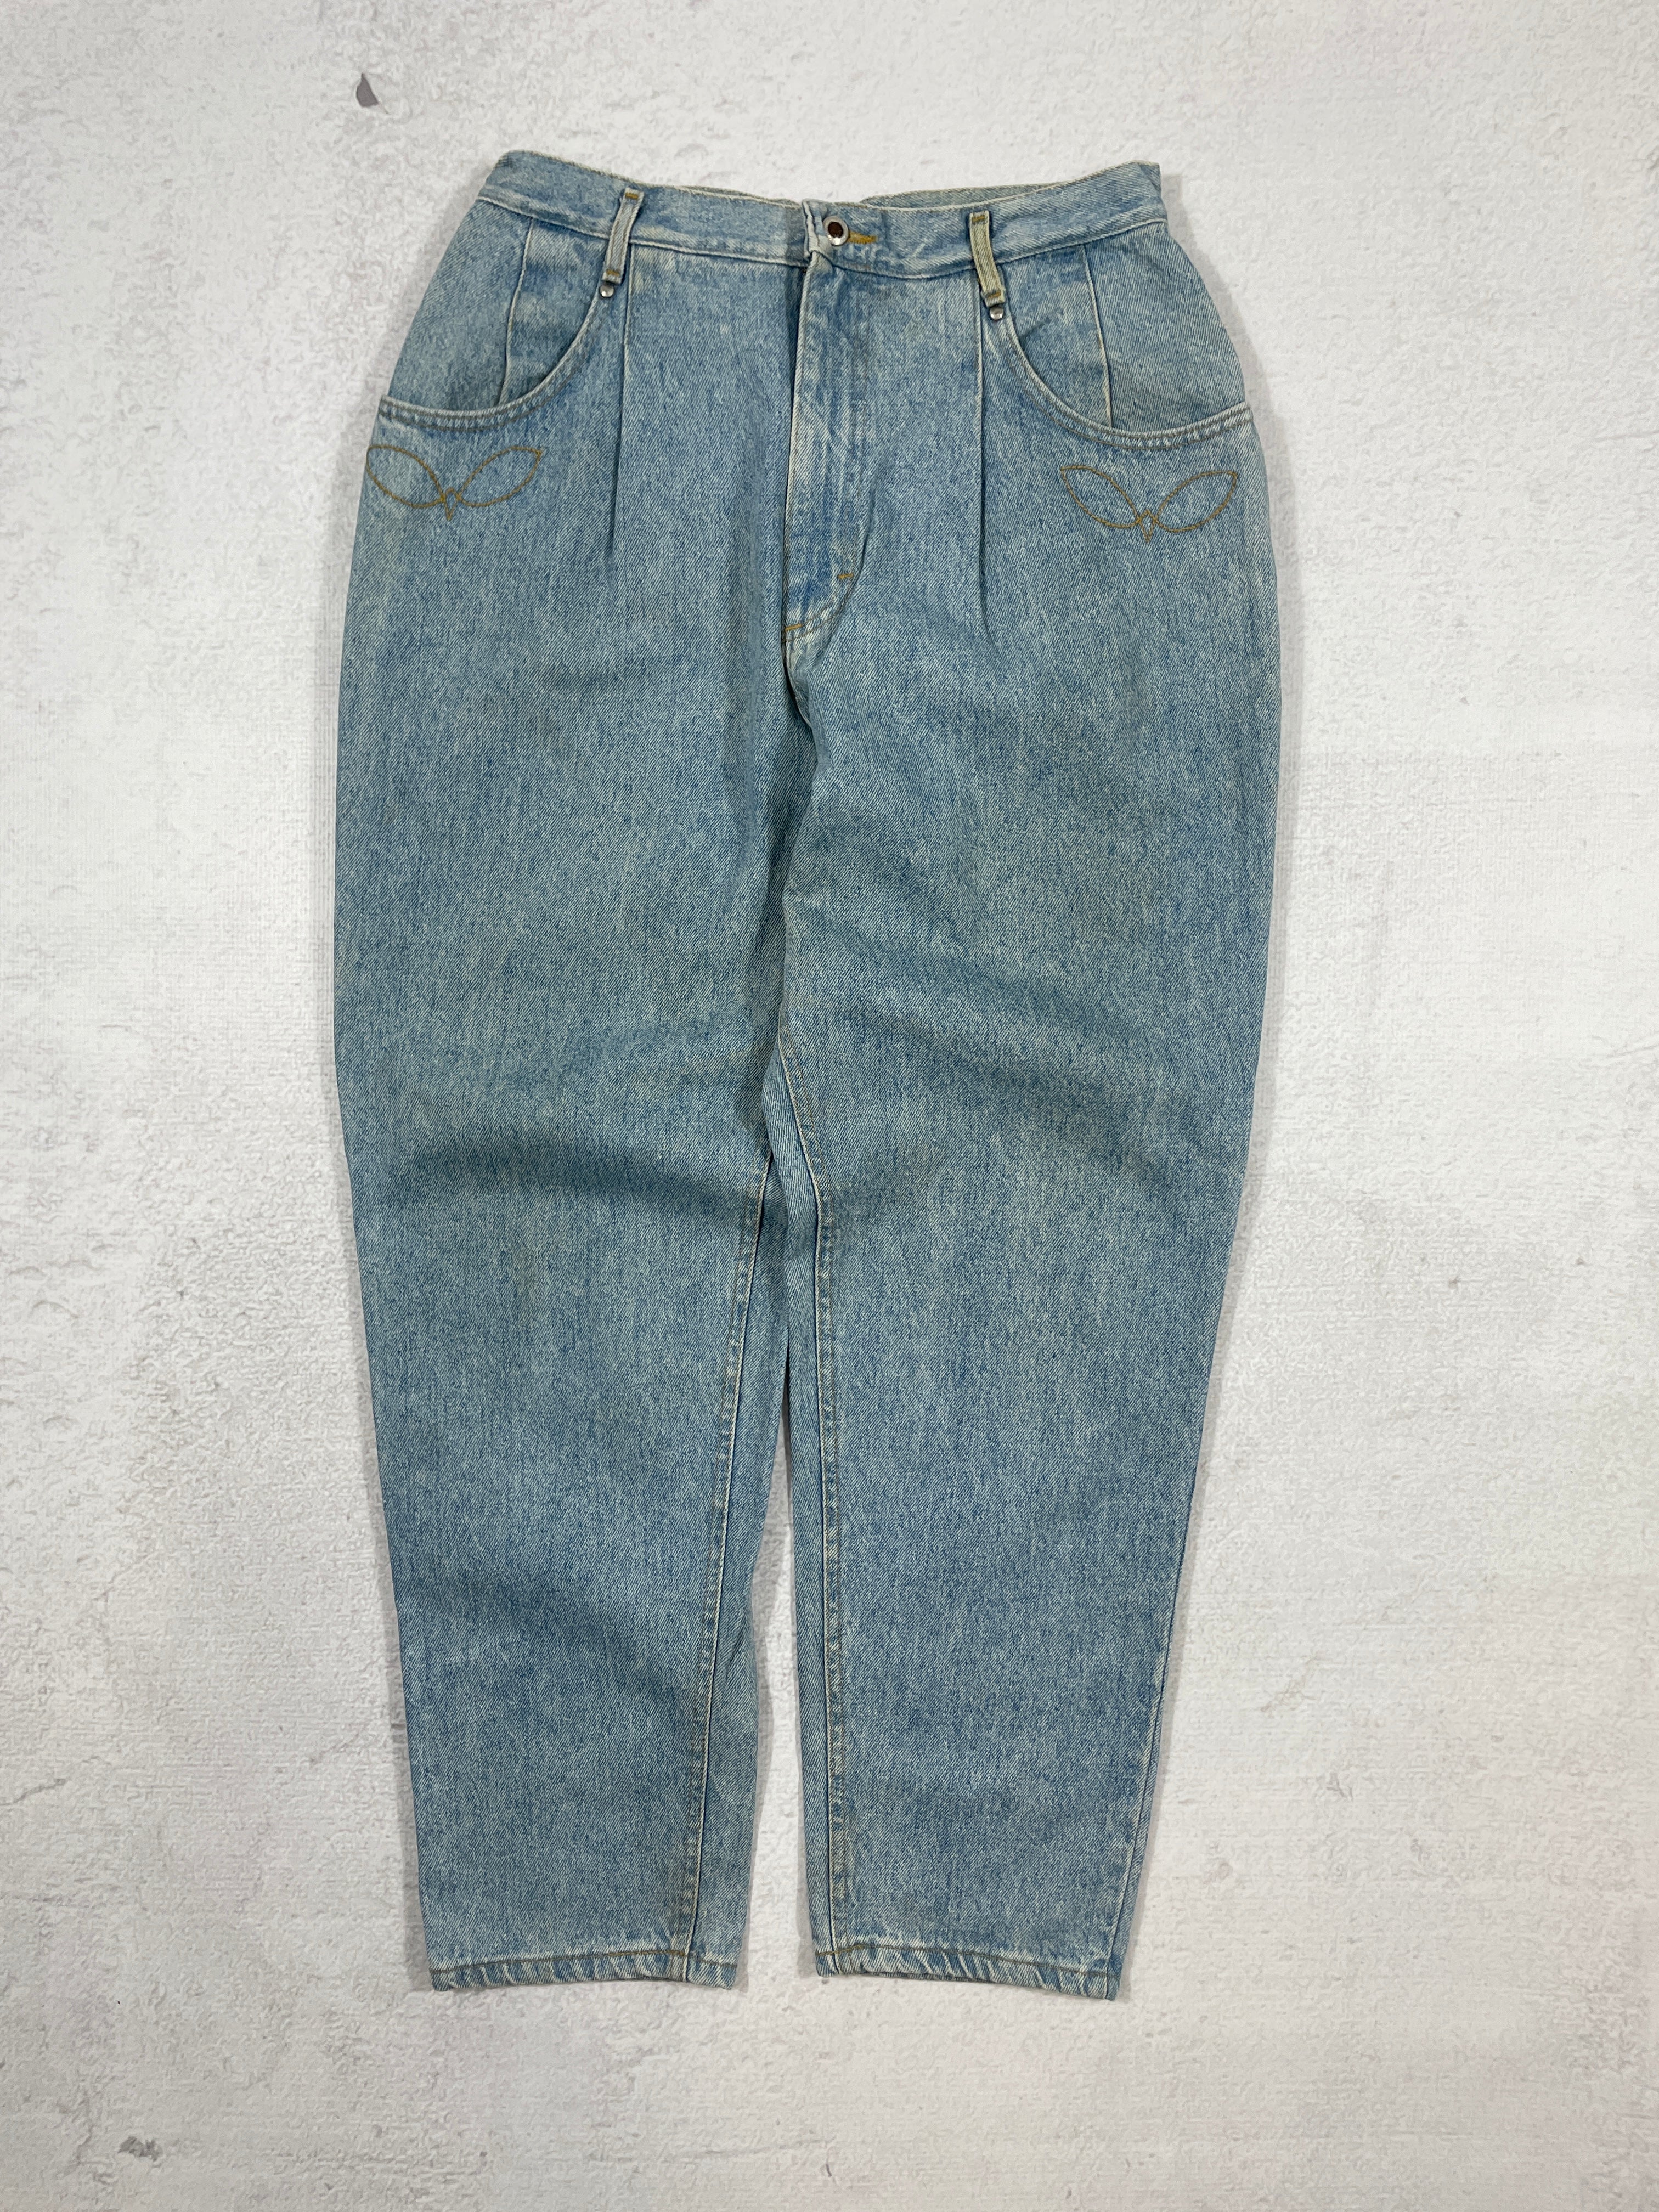 Vintage Lee Jeans - Men's 34Wx31L